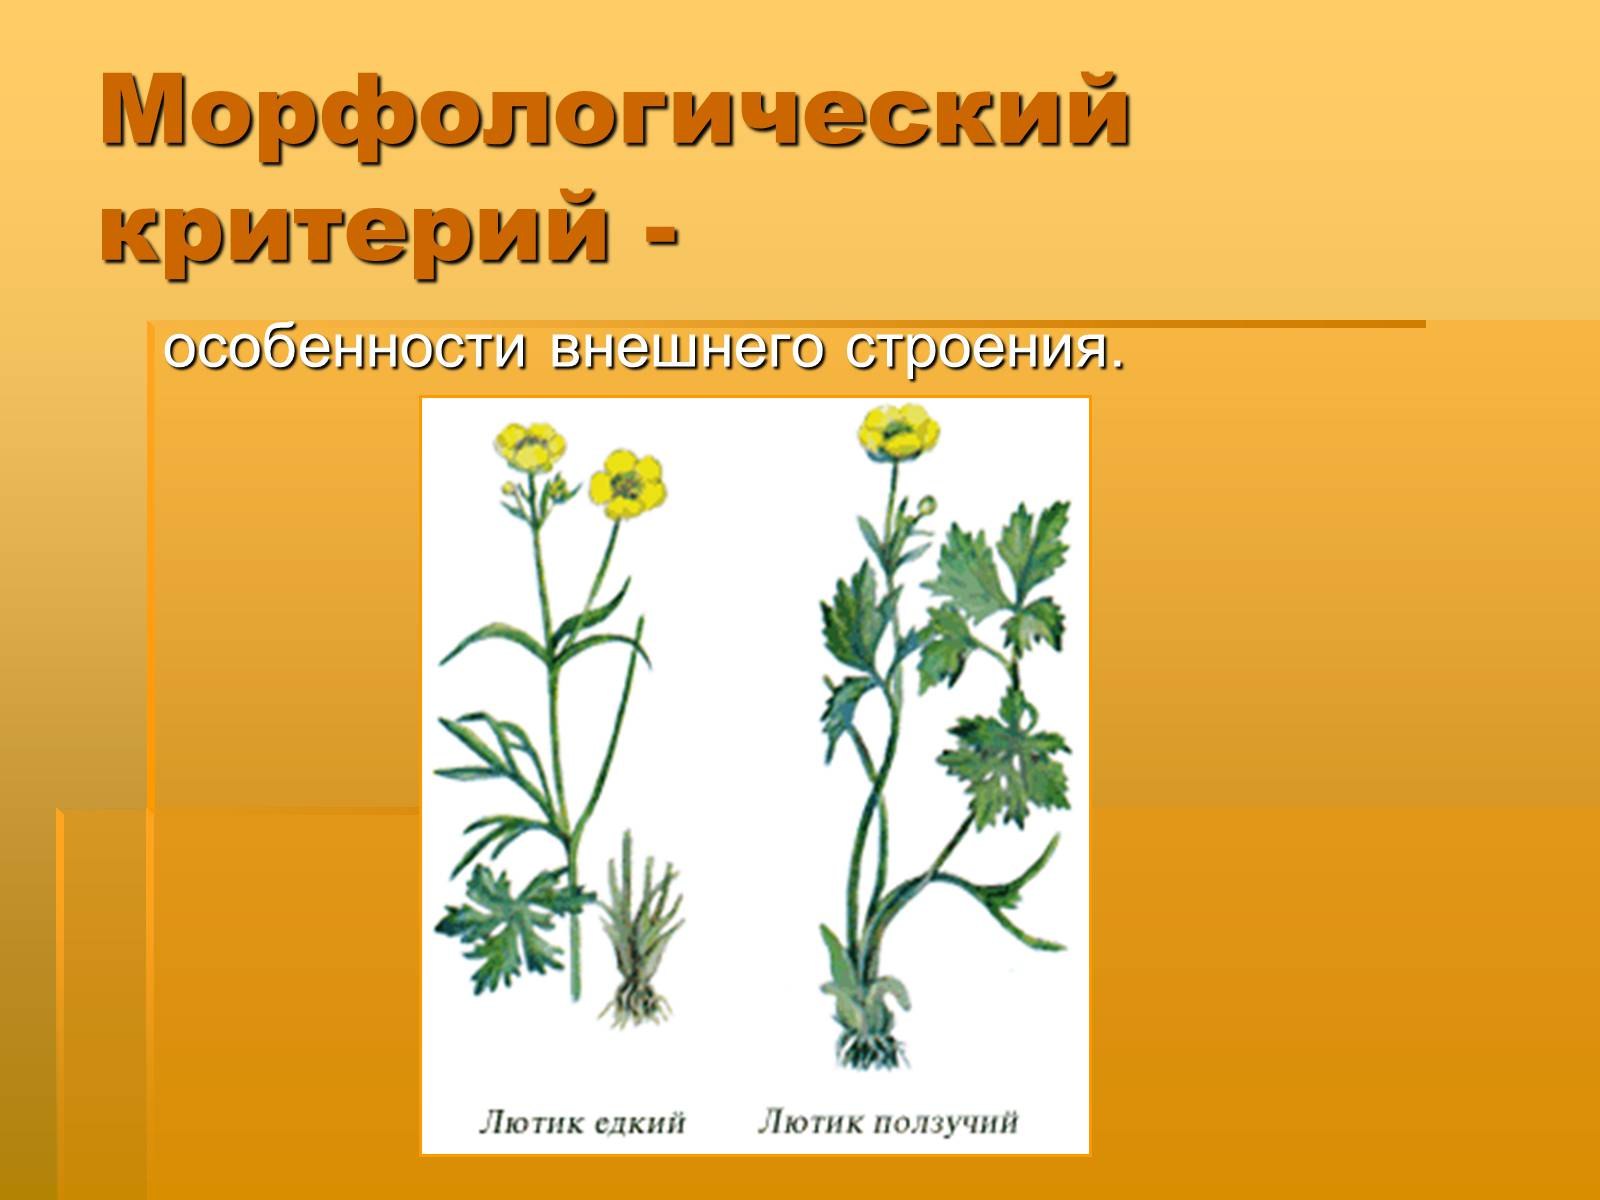 Какой тип питания характерен для лютика. Лютик ползучий. Растения двух видов. Два растения одного рода.